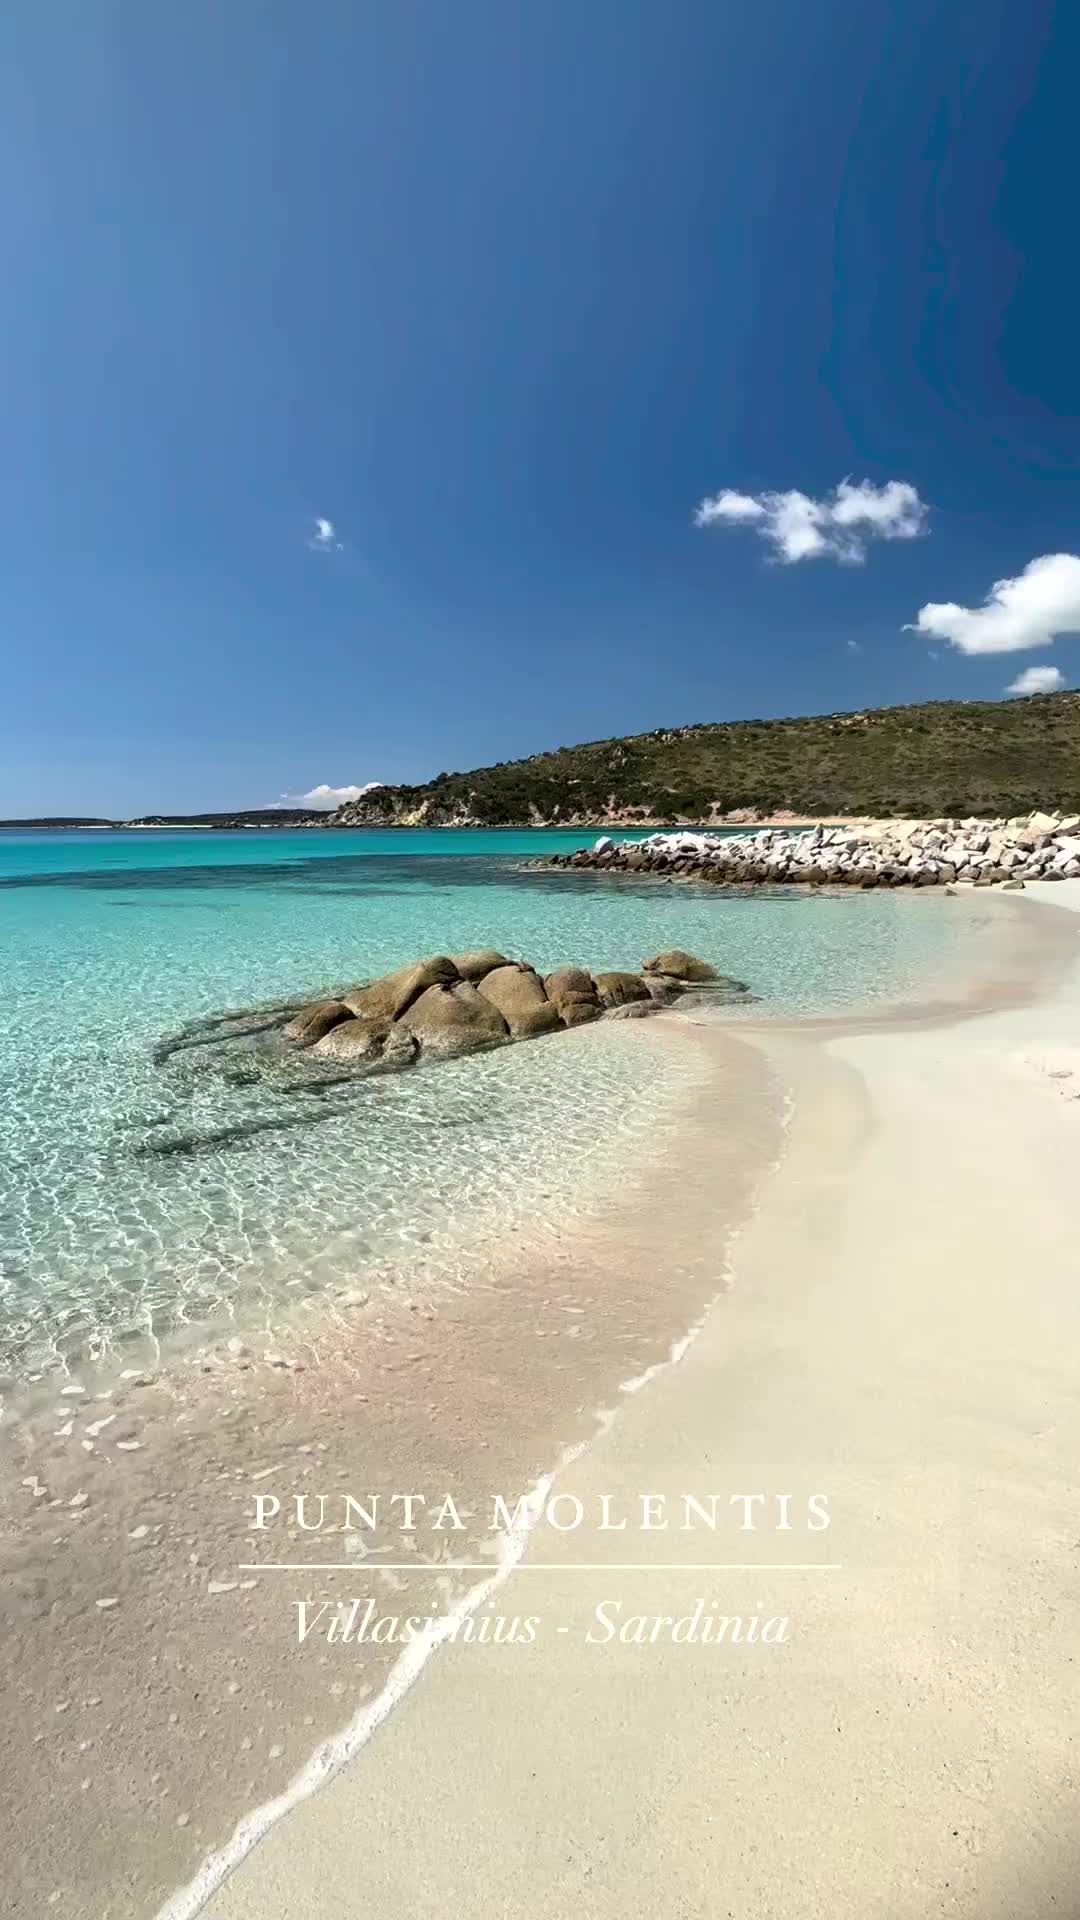 Punta Molentis Beach Access - Villasimius, Sardinia